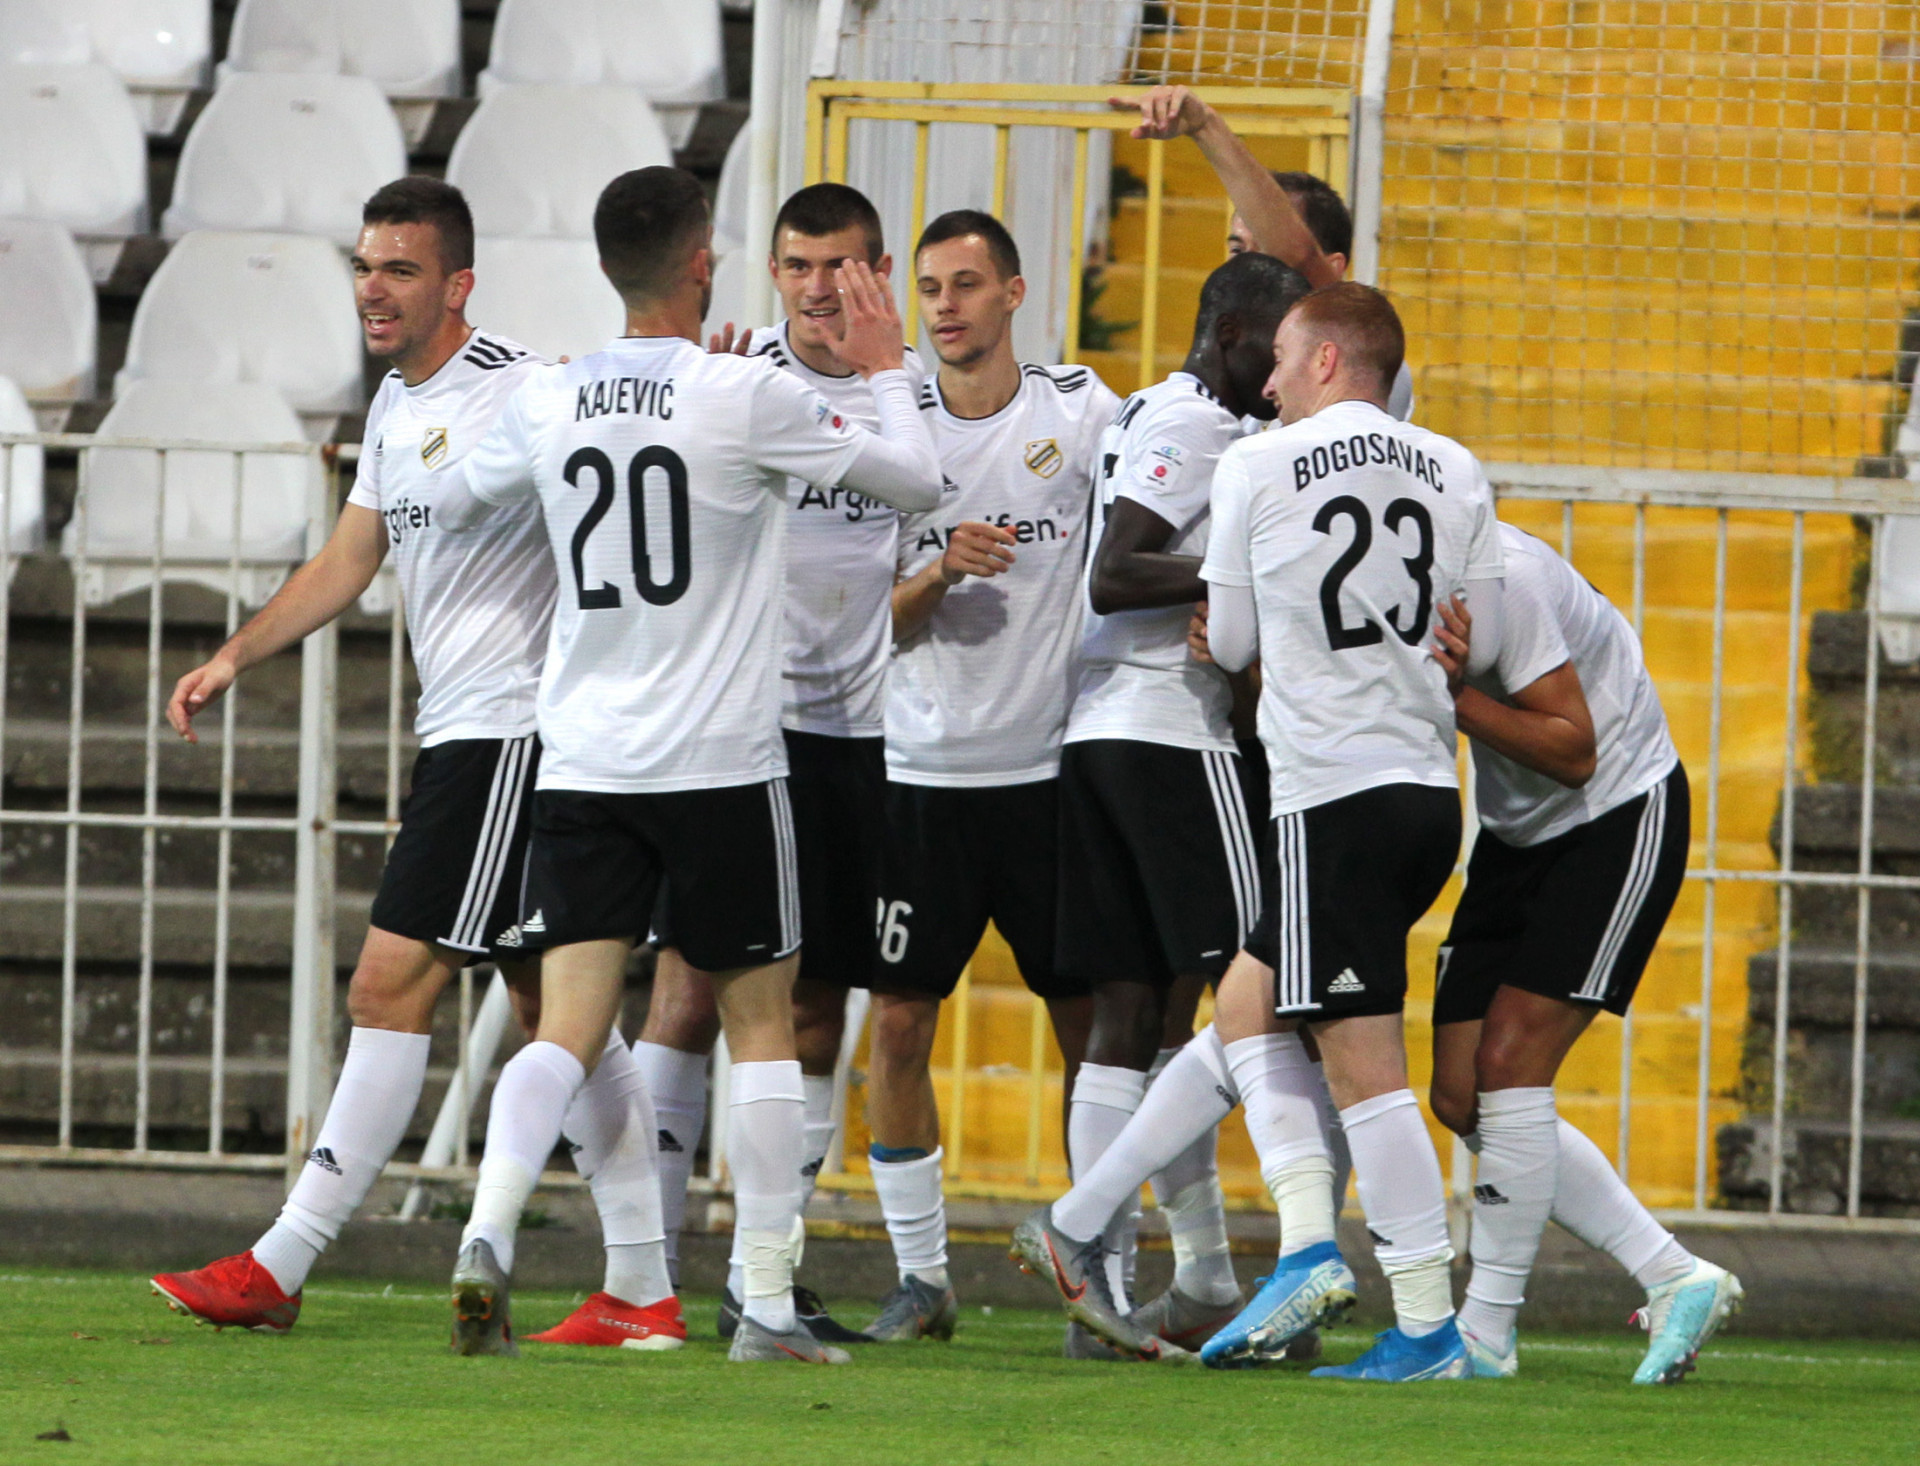 Čukarički - Javor 2:0 - Dimitrije Kamenović,Luka Stojanović,Veljko Birmančević | FkCukaricki